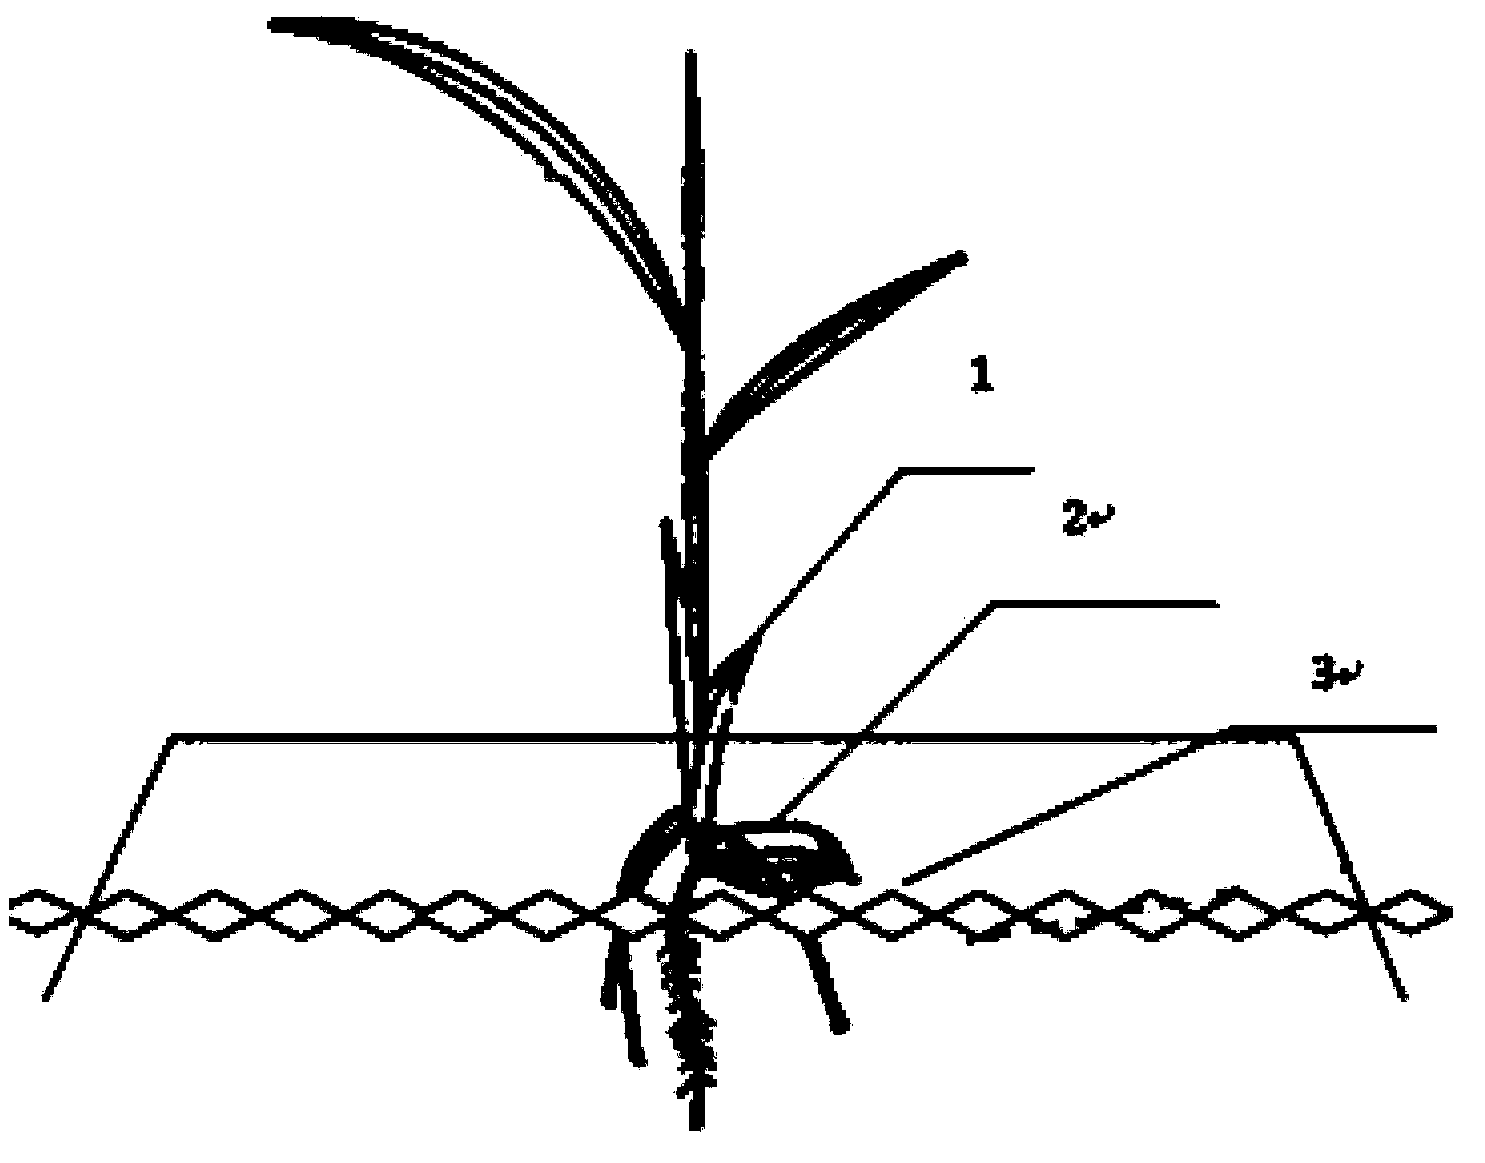 Dry-land rice seedling raising method